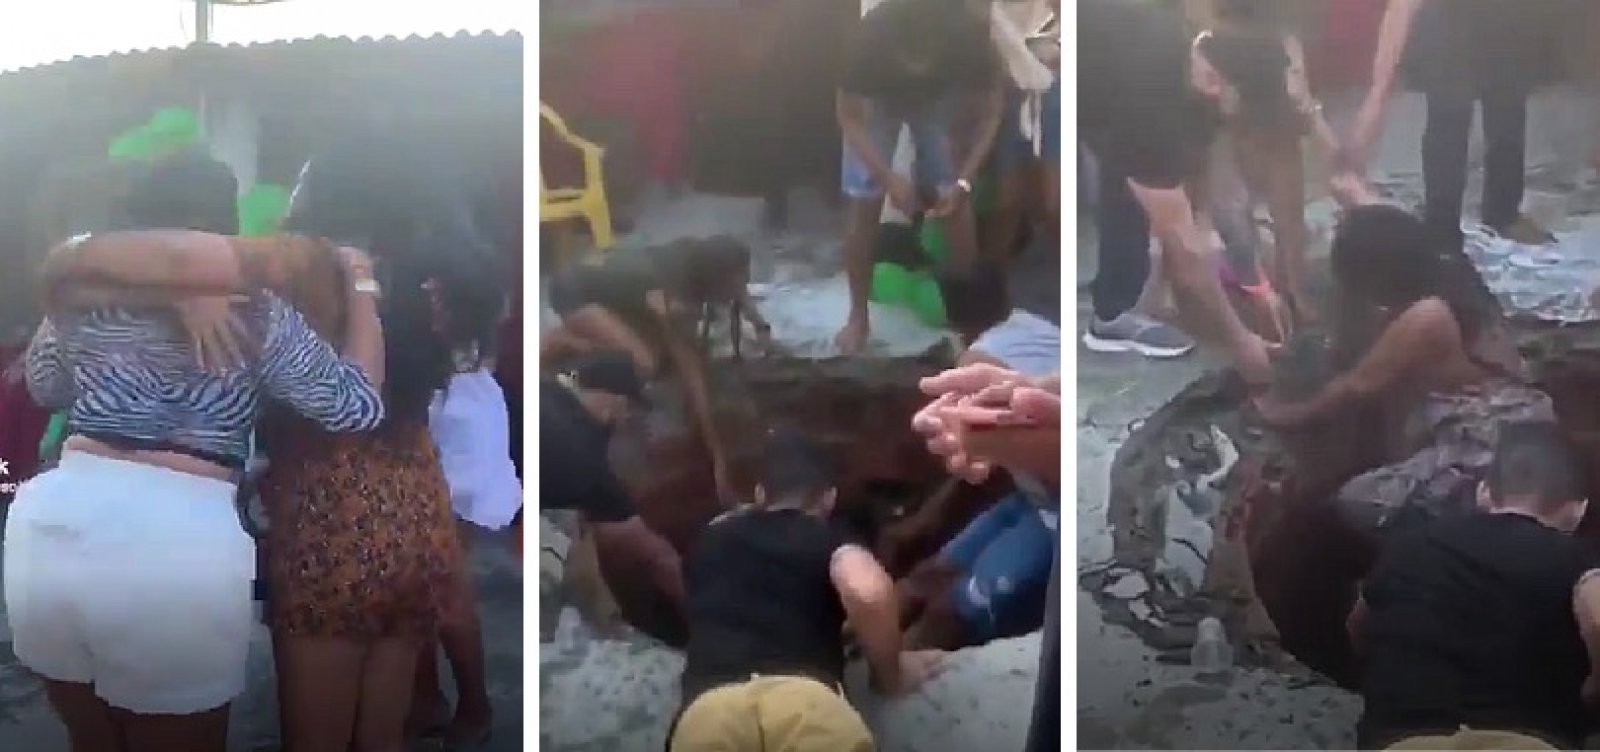 Deu merda: Mulheres caem em fossa durante comemoração de aniversário no interior da Bahia; veja vídeo 